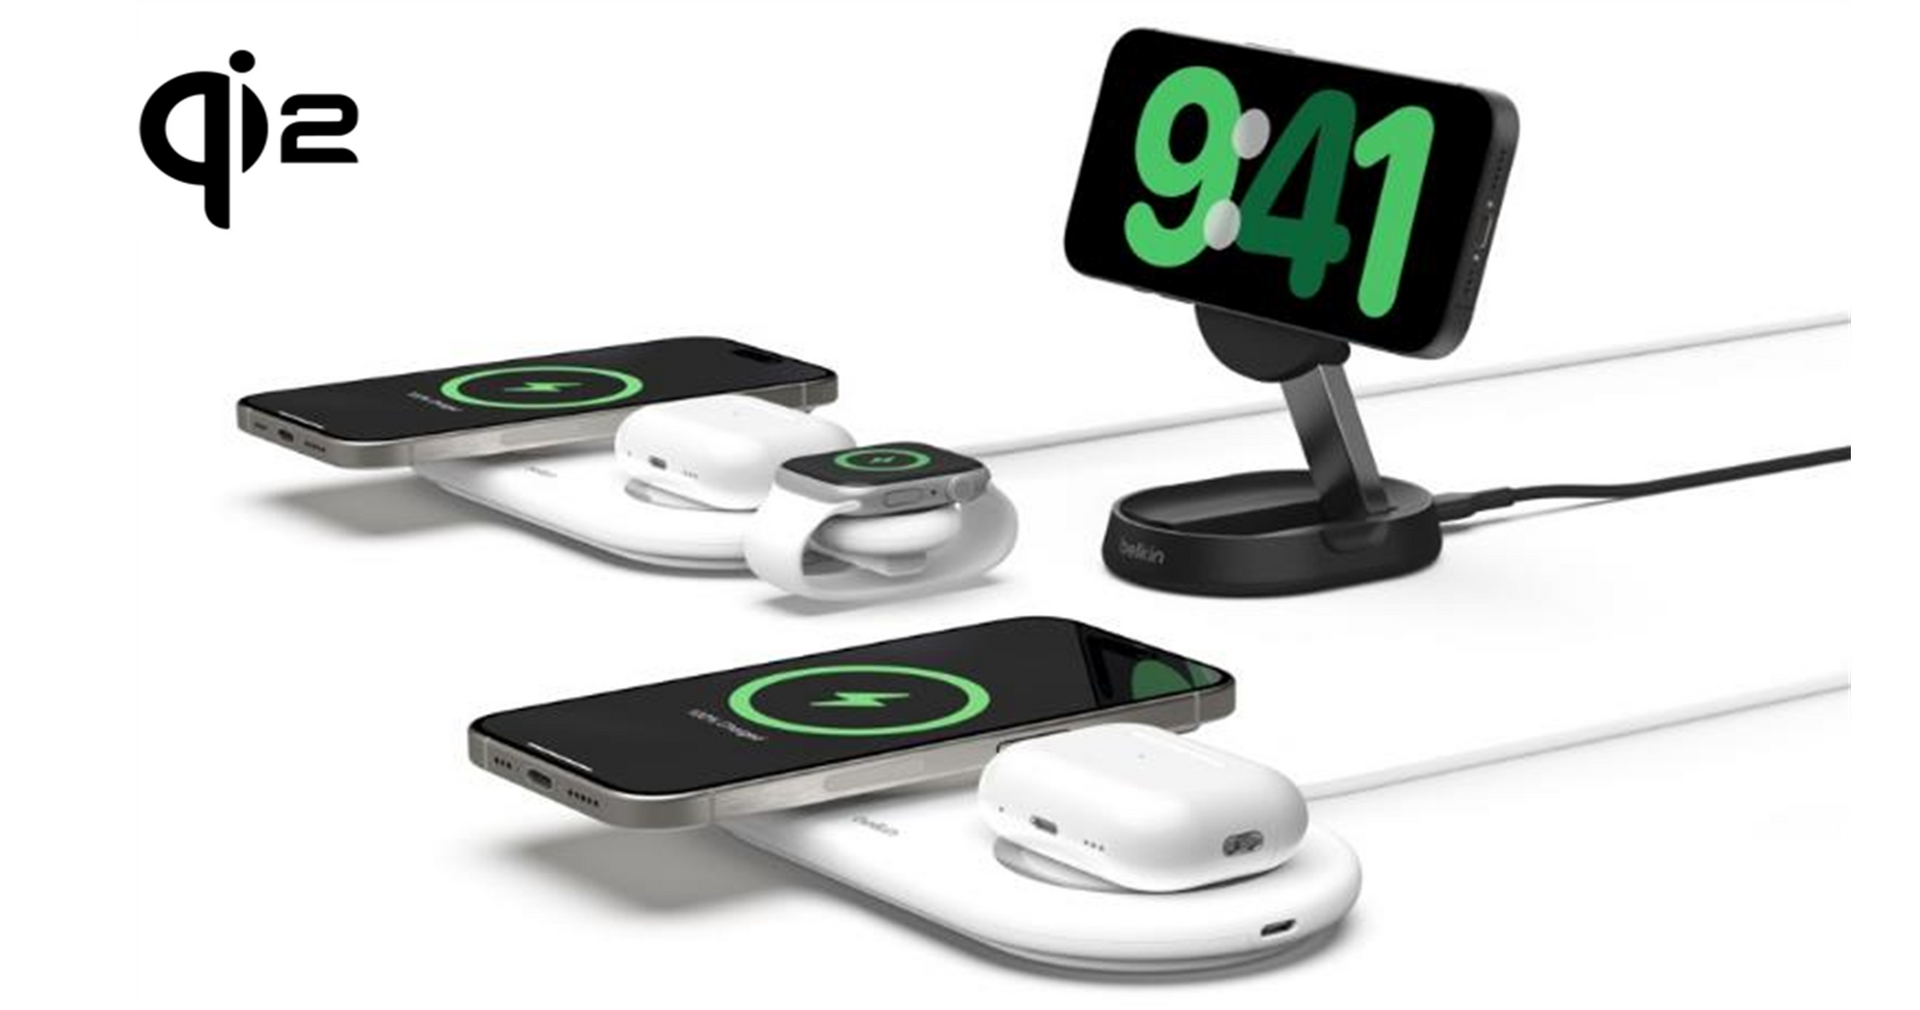 ベルキン、世界初のQi2公式認証ワイヤレス充電器を発売。iPhoneも